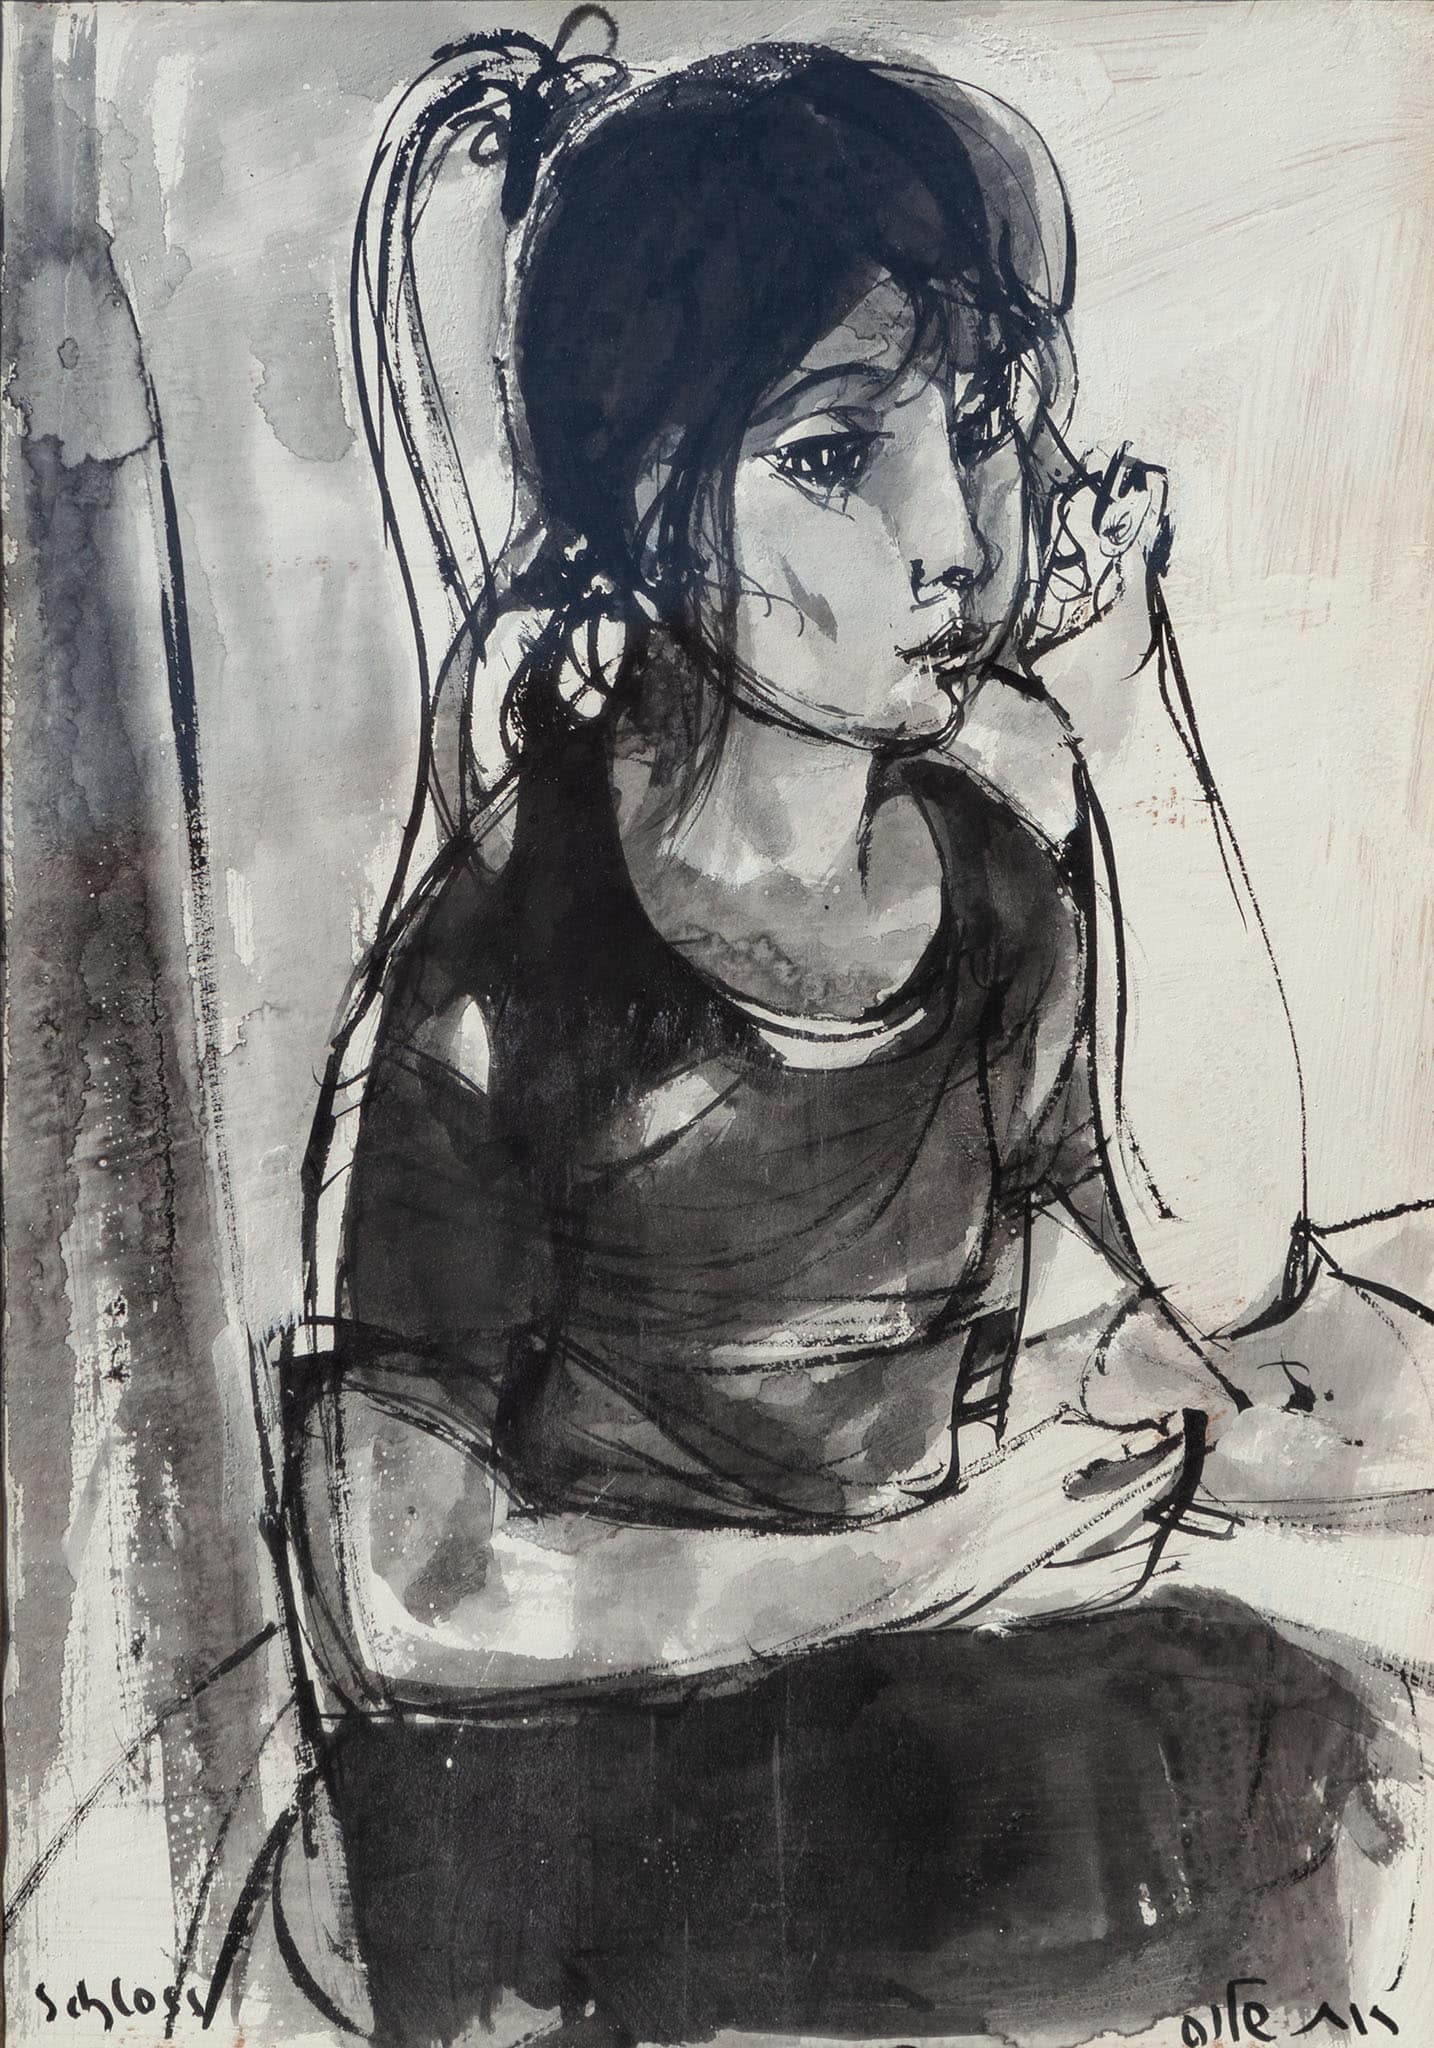 רות שלוס, "נערה", דיו ואקוורל על נייר, 50x35 ס"מ